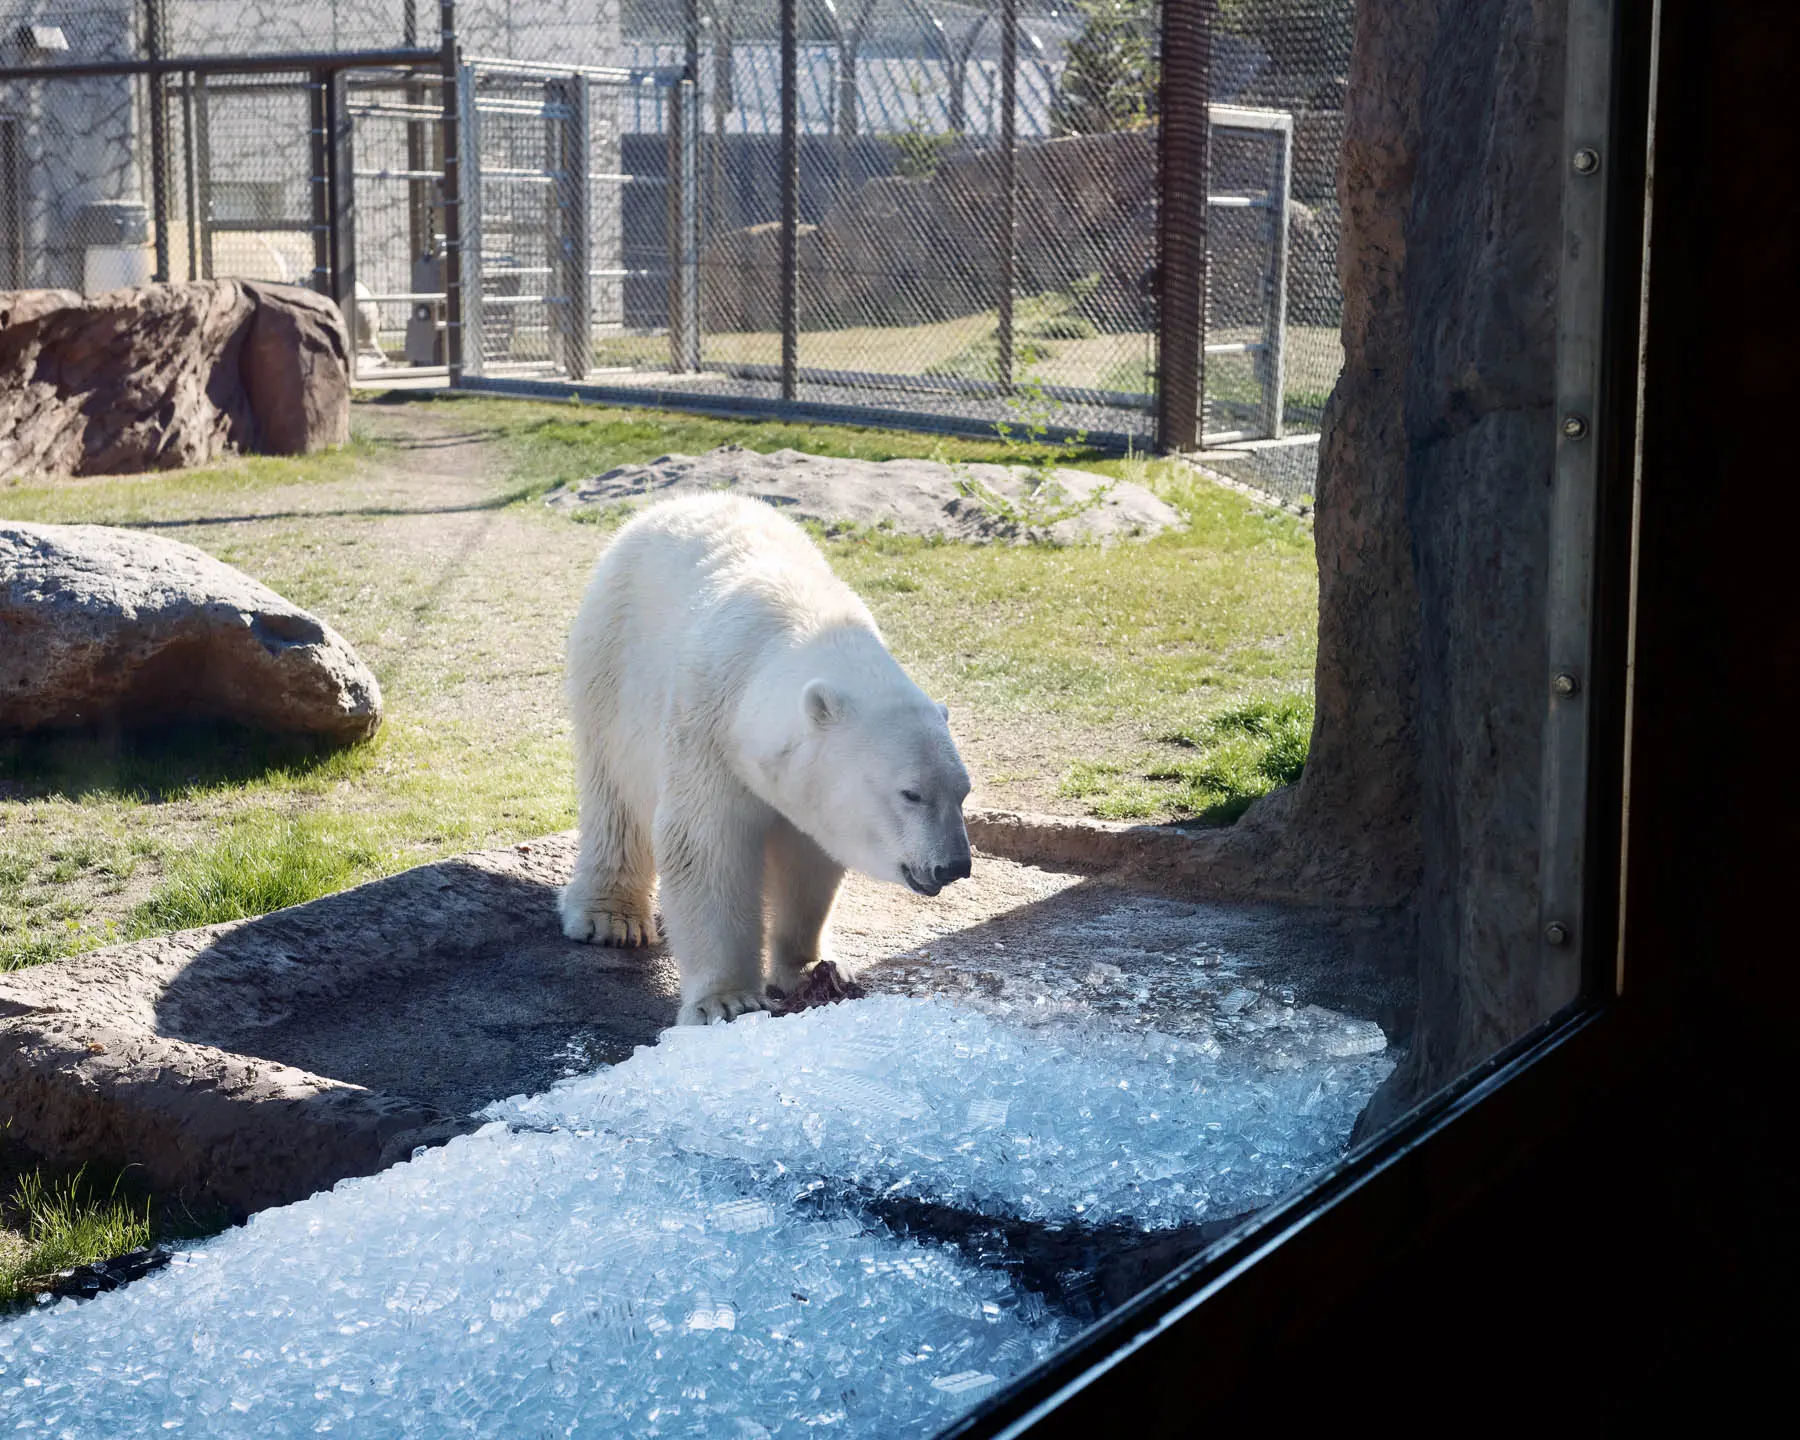 Polar bear at zoo looking at ice